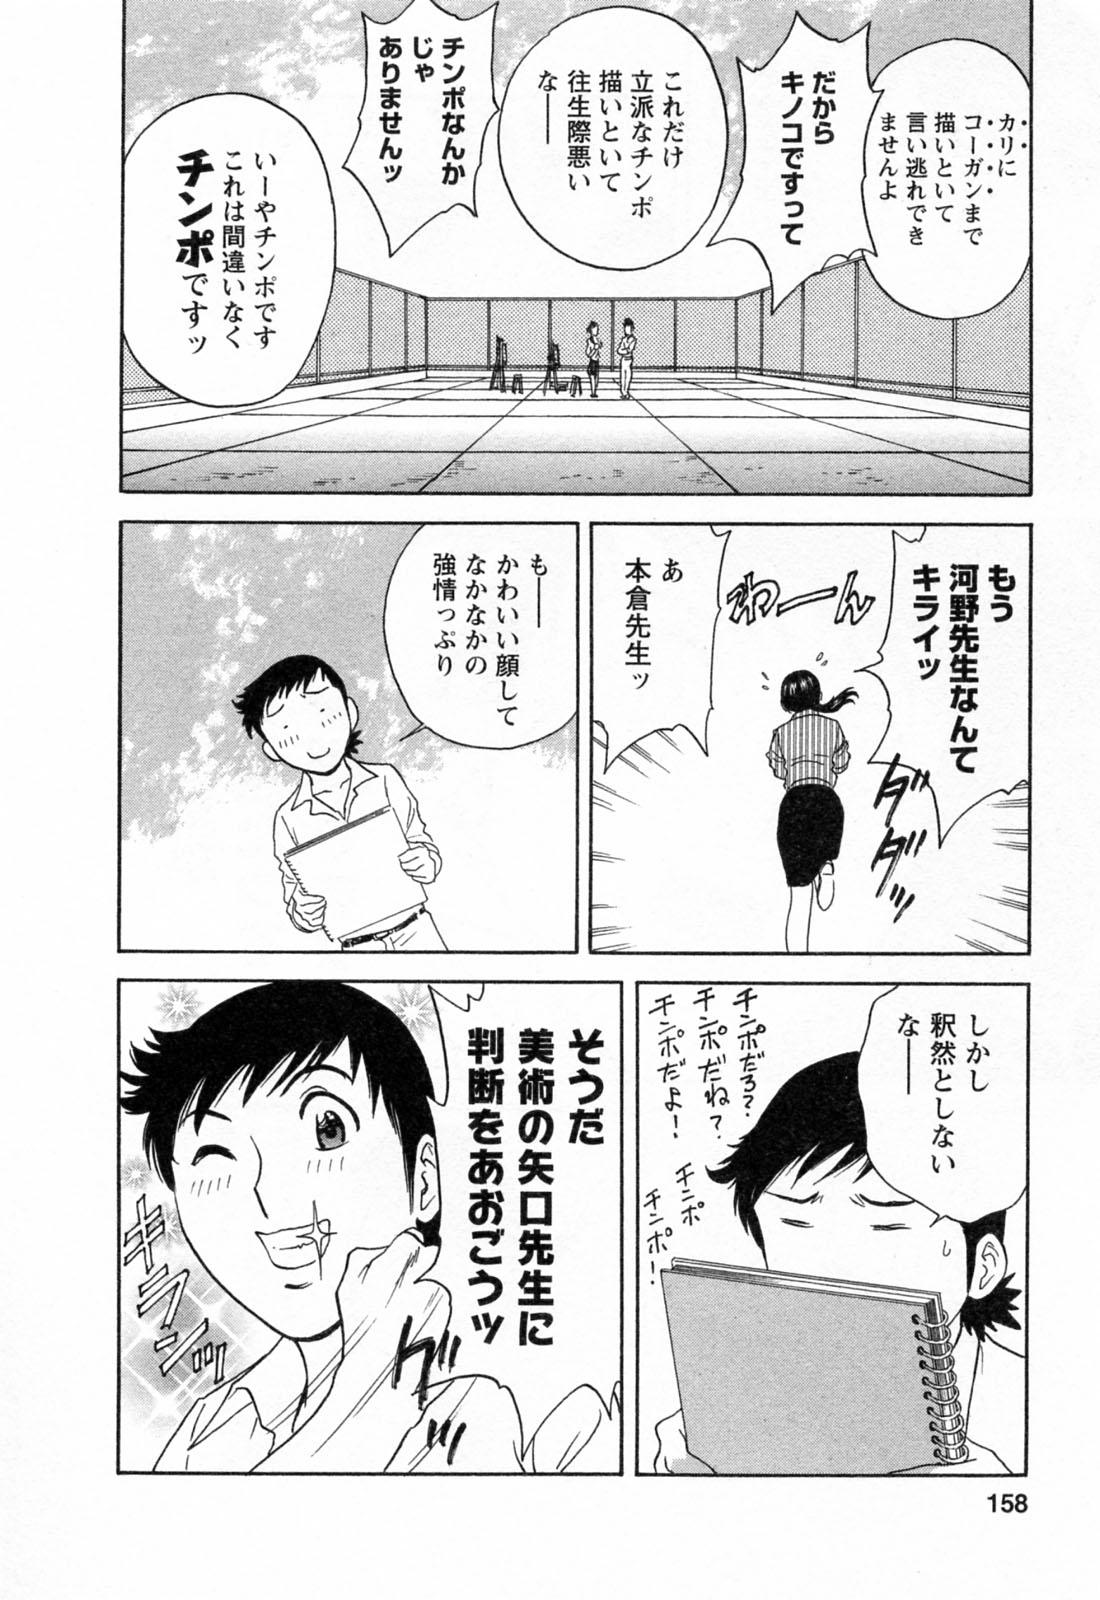 [Hidemaru] Mo-Retsu! Boin Sensei (Boing Boing Teacher) Vol.4 159